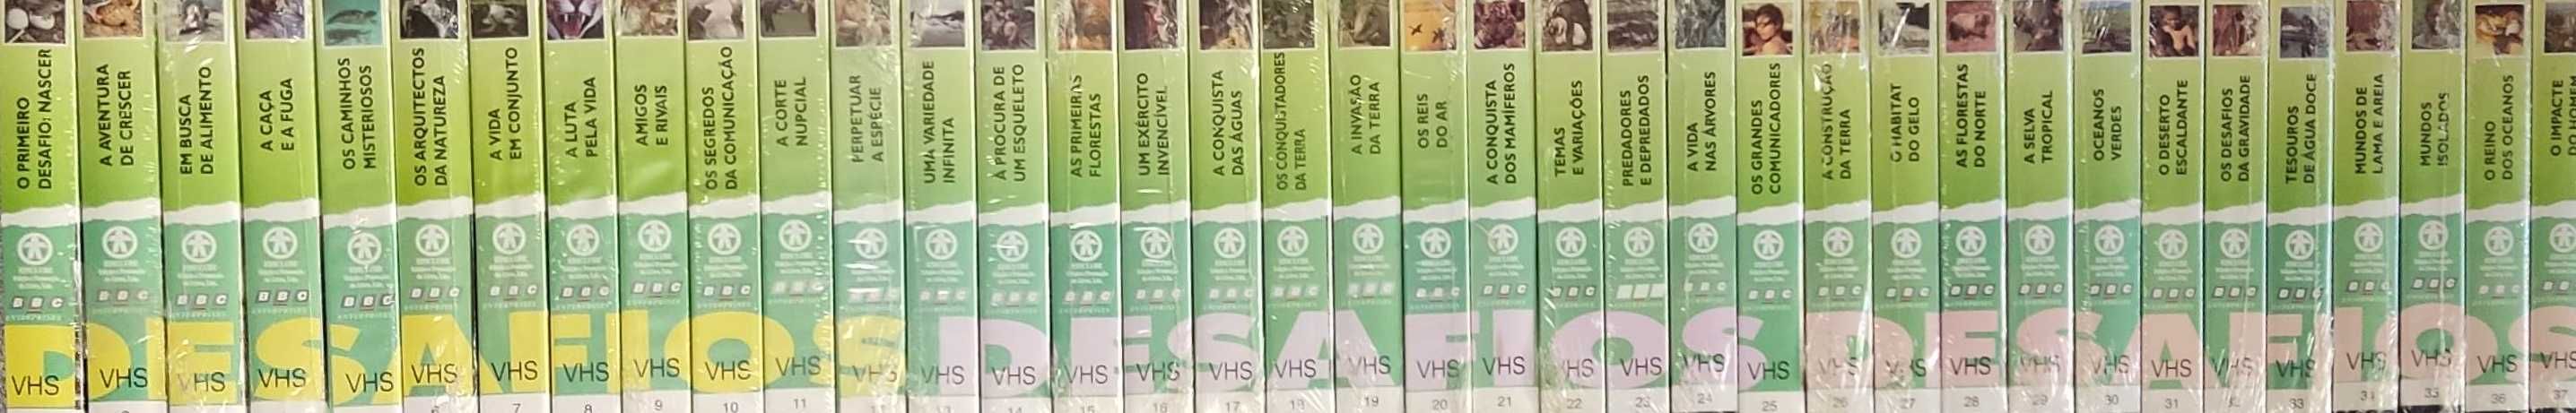 Lote de 37 VHS - Desafios da vida (ediclube) - Ler descrição